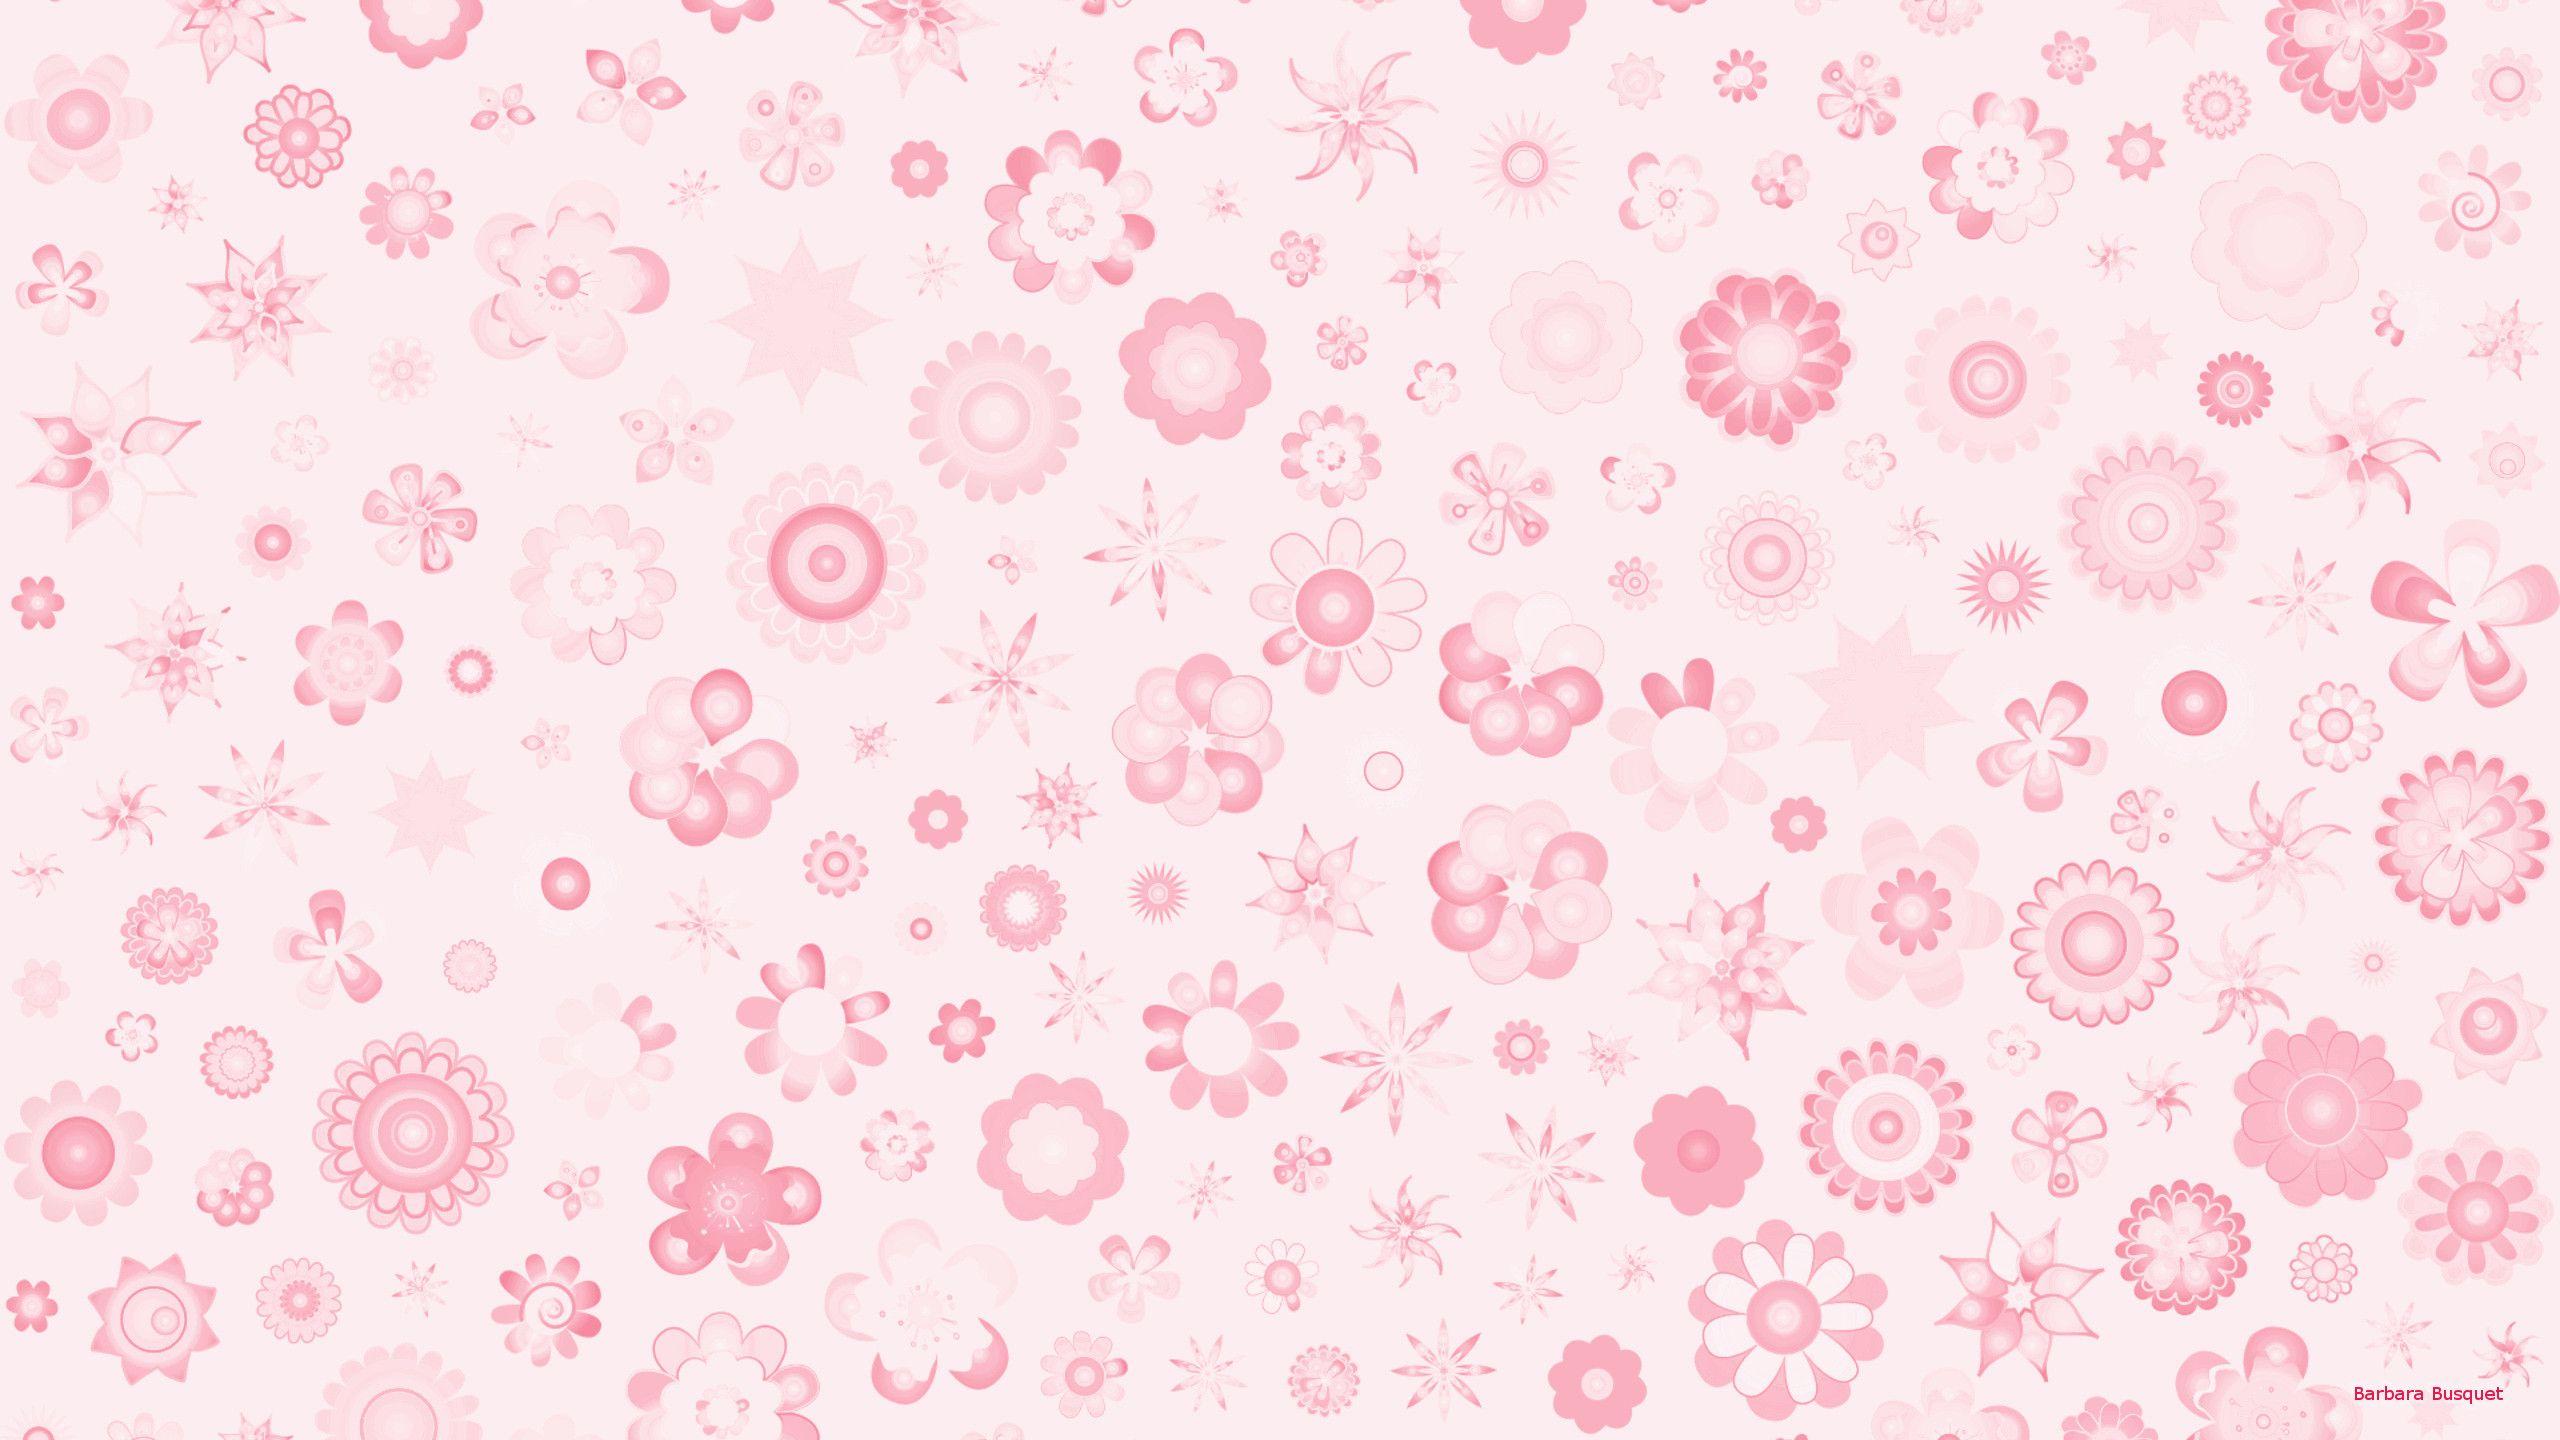 Light Flower Wallpapers - Top Free Light Flower Backgrounds - WallpaperAccess